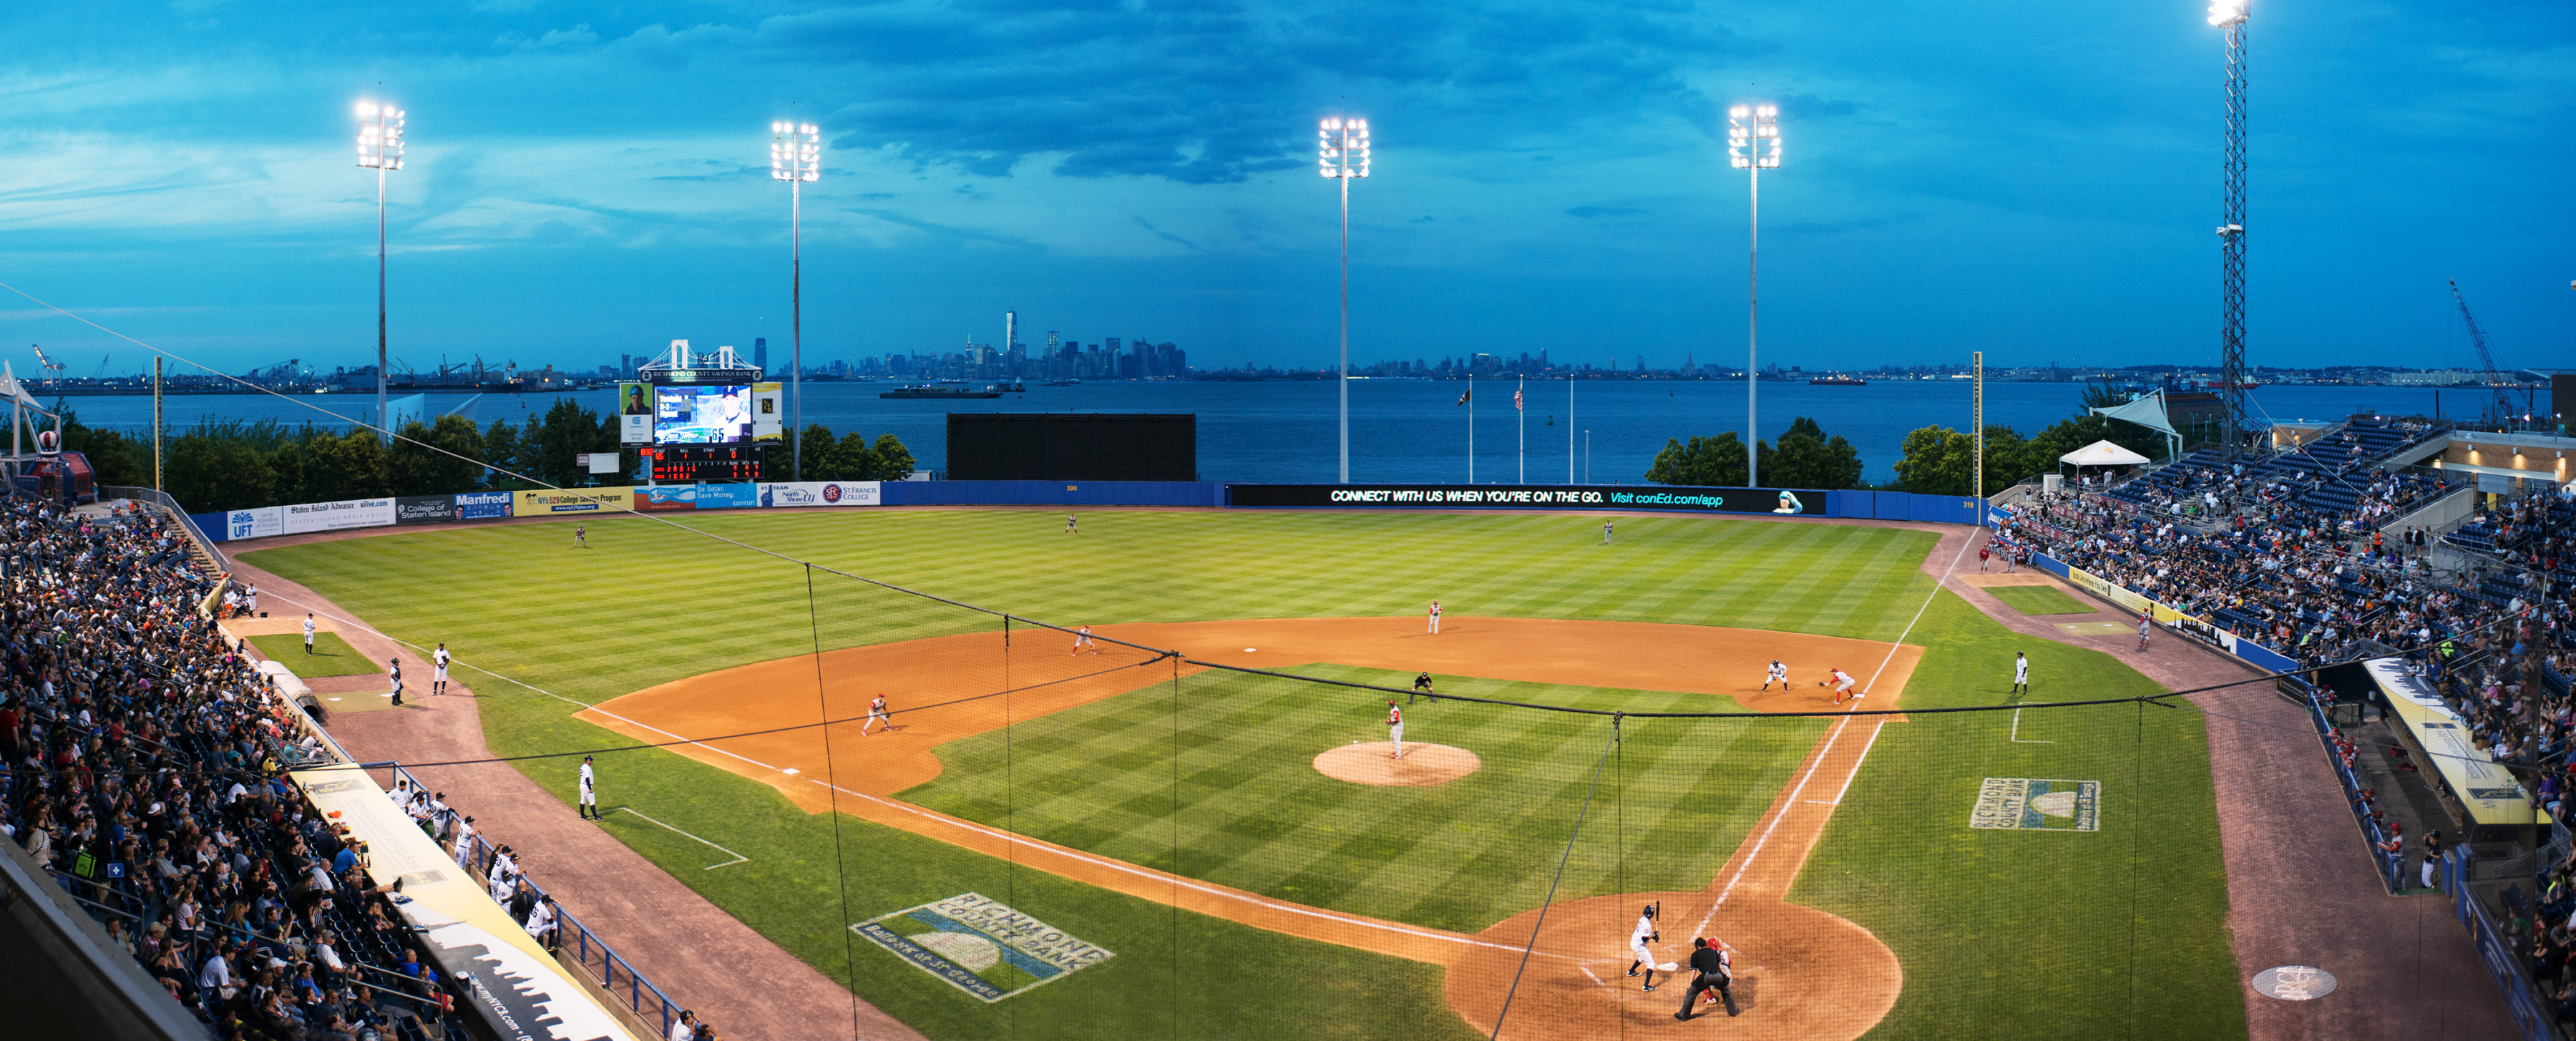 Staten island yankees baseball game 